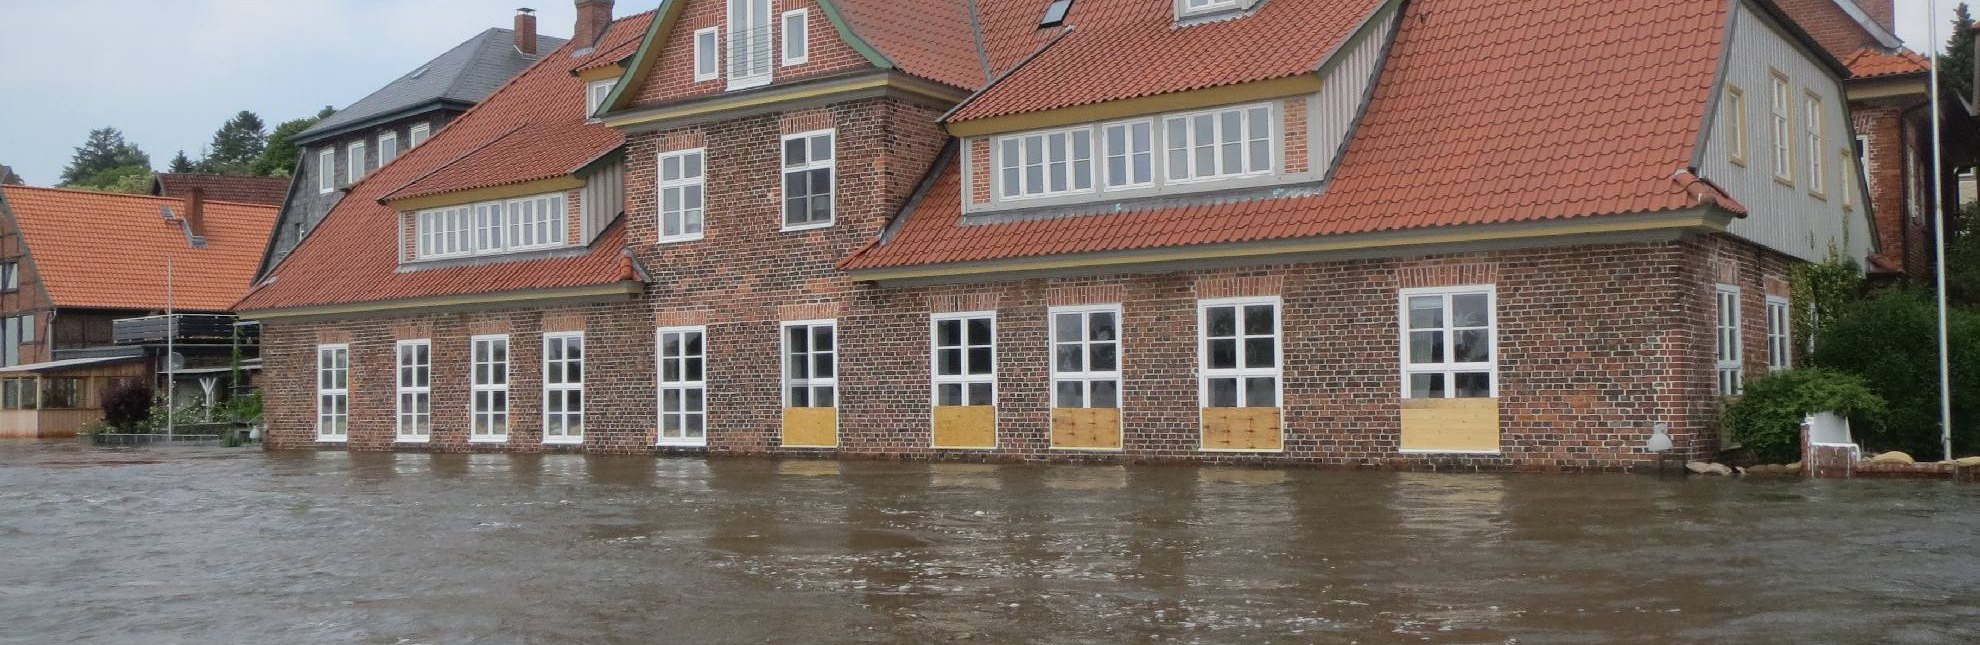 Hochwasser im Jahr 2013 in Lauenburg/Elbe, © Martina Wulf-Junge